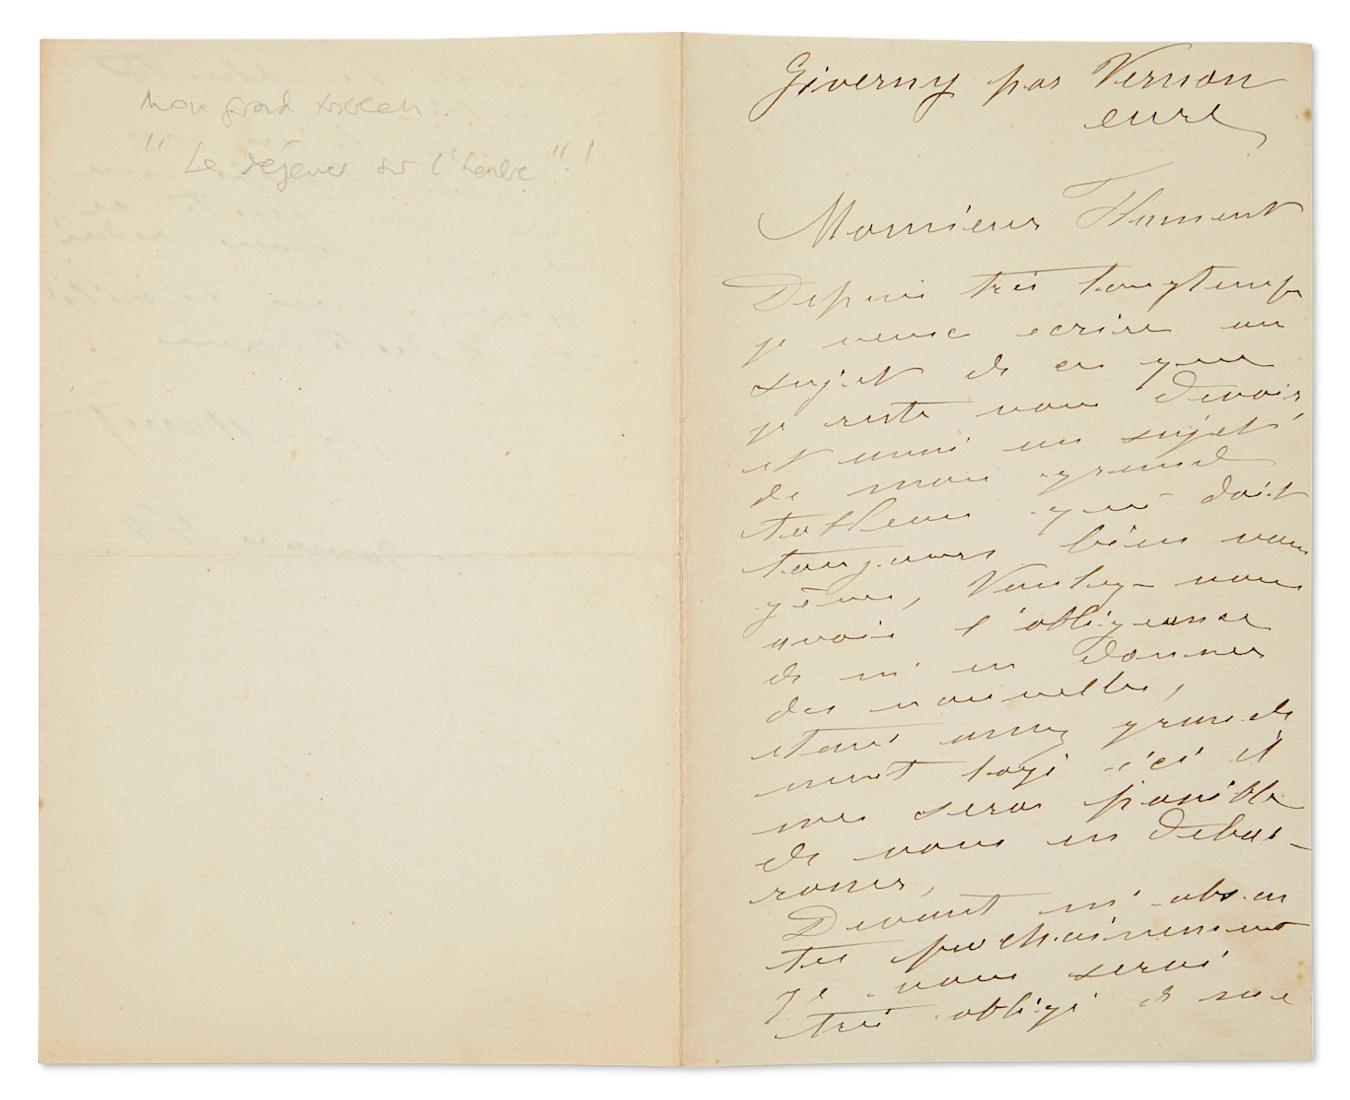 Ein handgeschriebener und signierter Brief von Claude Monet aus dem Jahr 1840
Mit außergewöhnlichem Inhalt zu seinem berühmten 